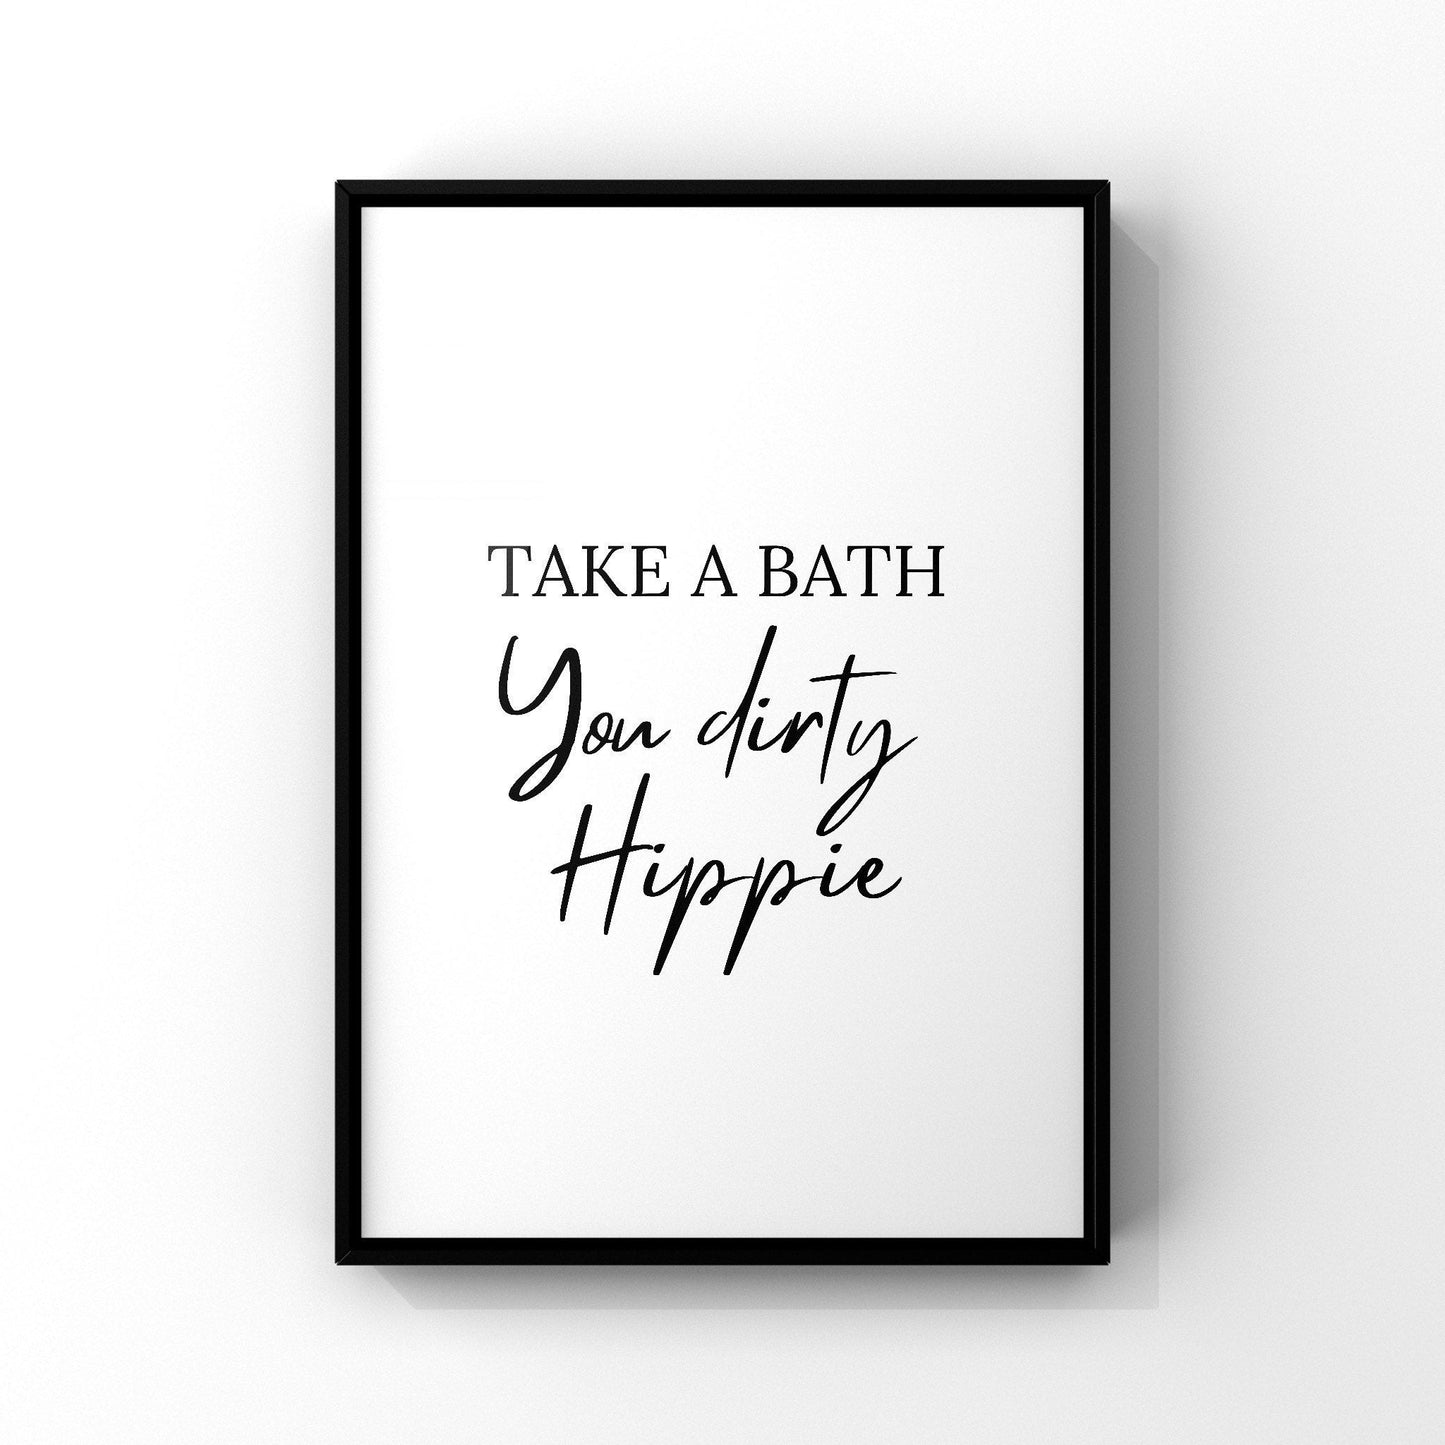 Take a bath you dirty hippie